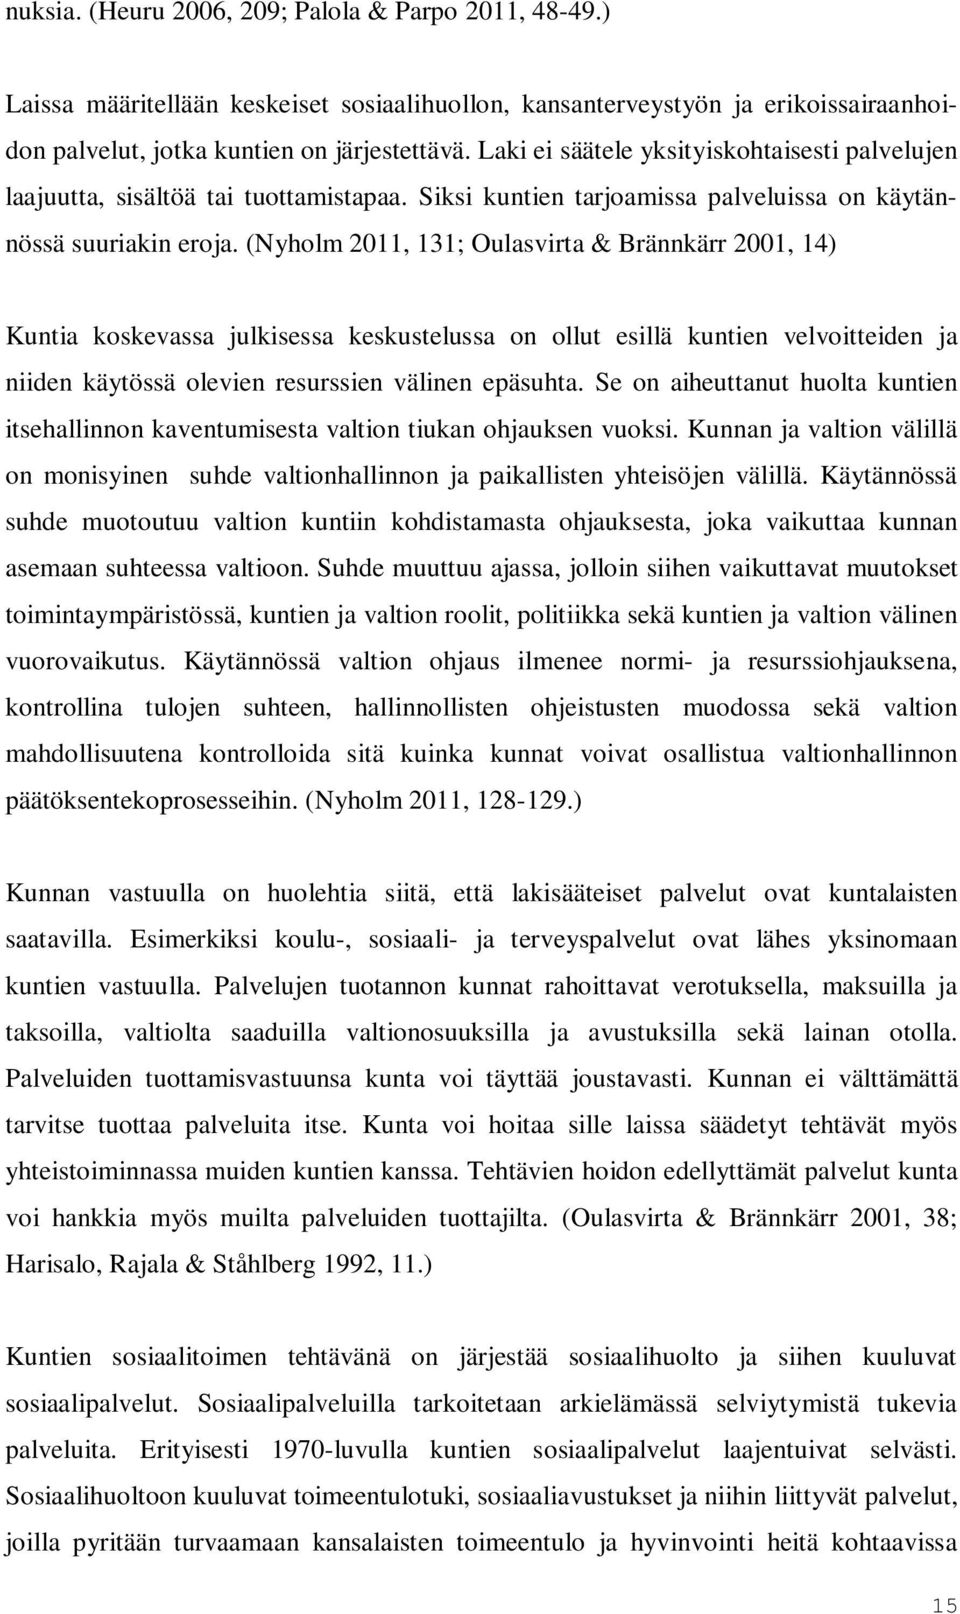 (Nyholm 2011, 131; Oulasvirta & Brännkärr 2001, 14) Kuntia koskevassa julkisessa keskustelussa on ollut esillä kuntien velvoitteiden ja niiden käytössä olevien resurssien välinen epäsuhta.